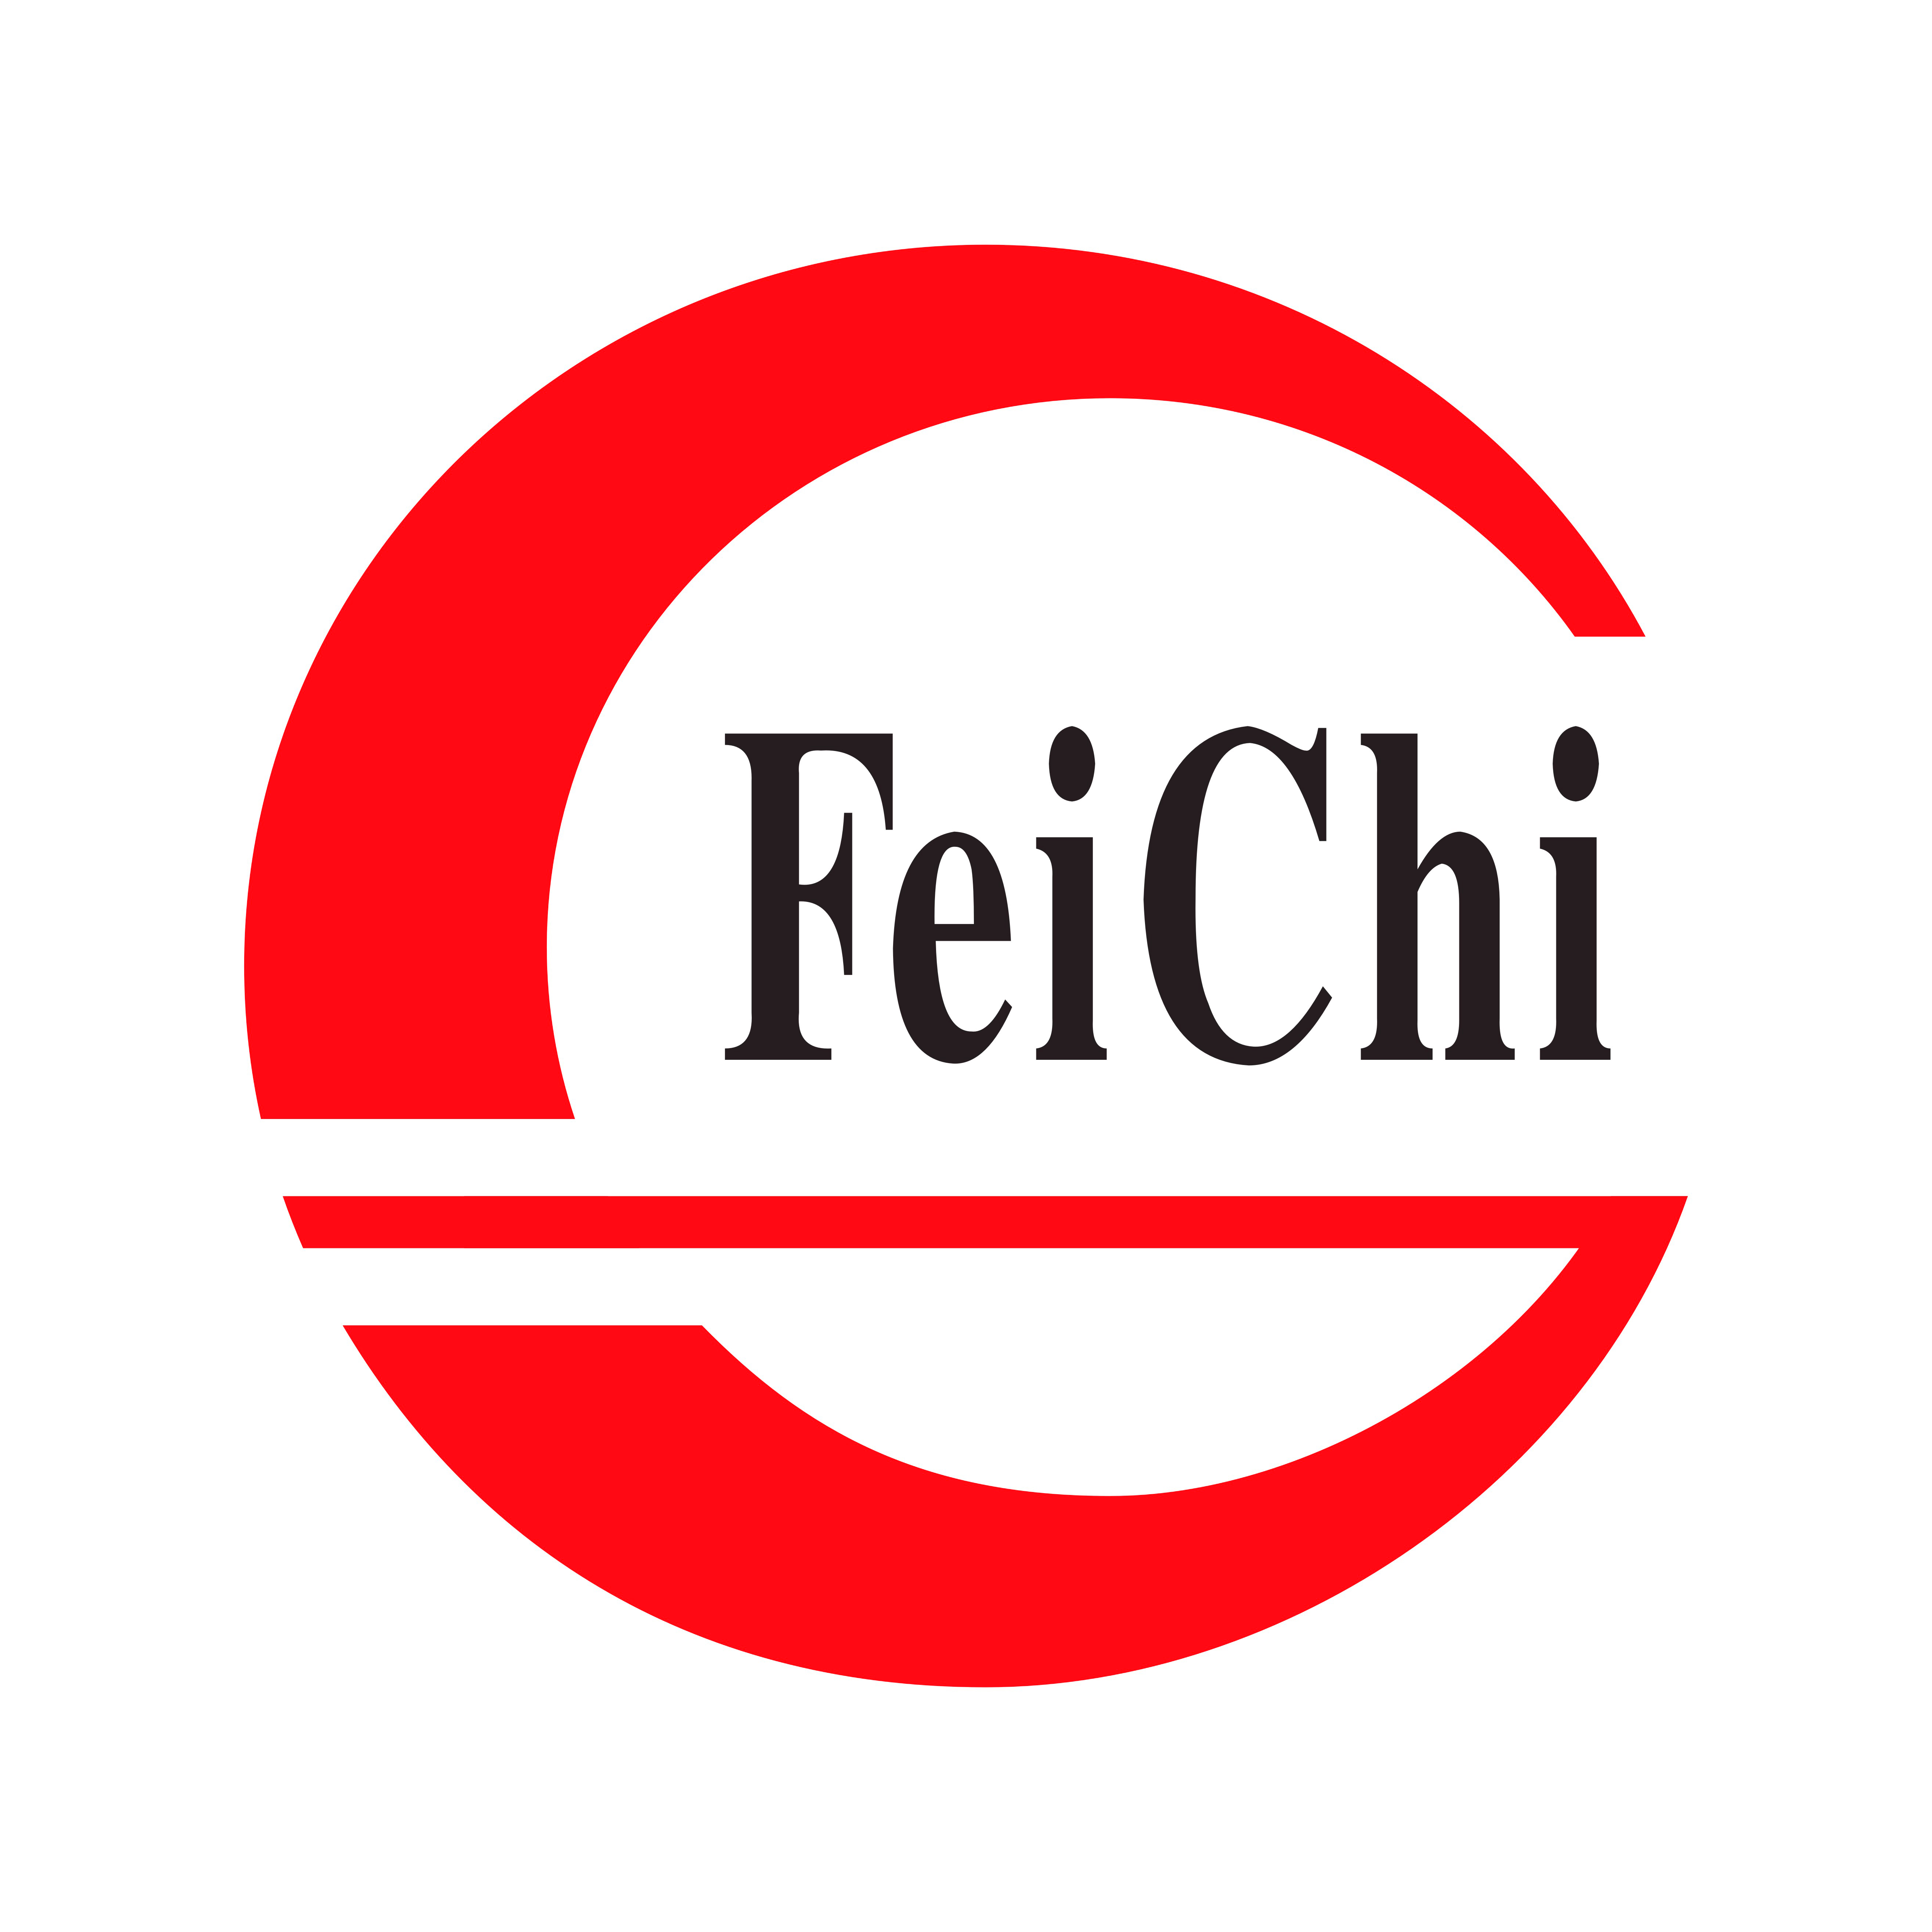 Cangzhou Feichi